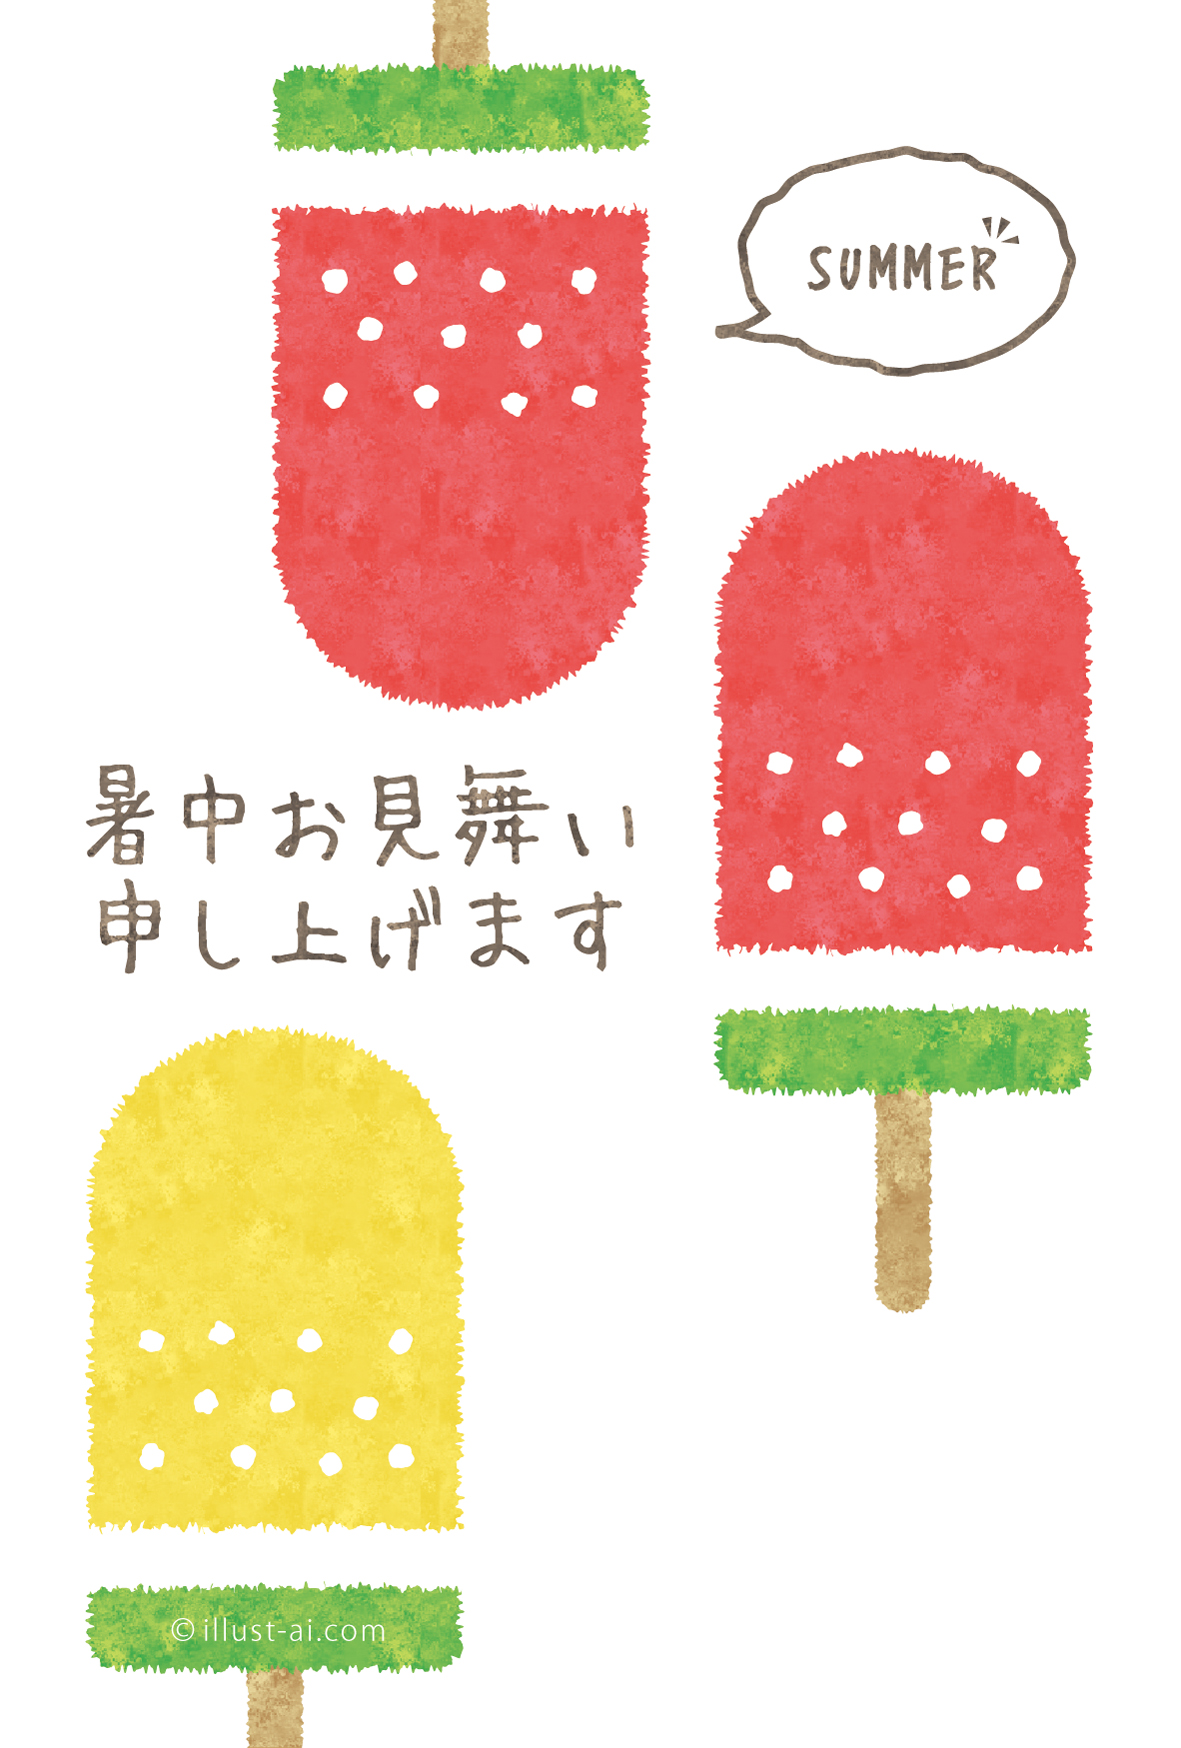 赤と黄色のスイカのアイス 暑中お見舞い ポストカード イラスト素材サイト イラストareira Postcard Template